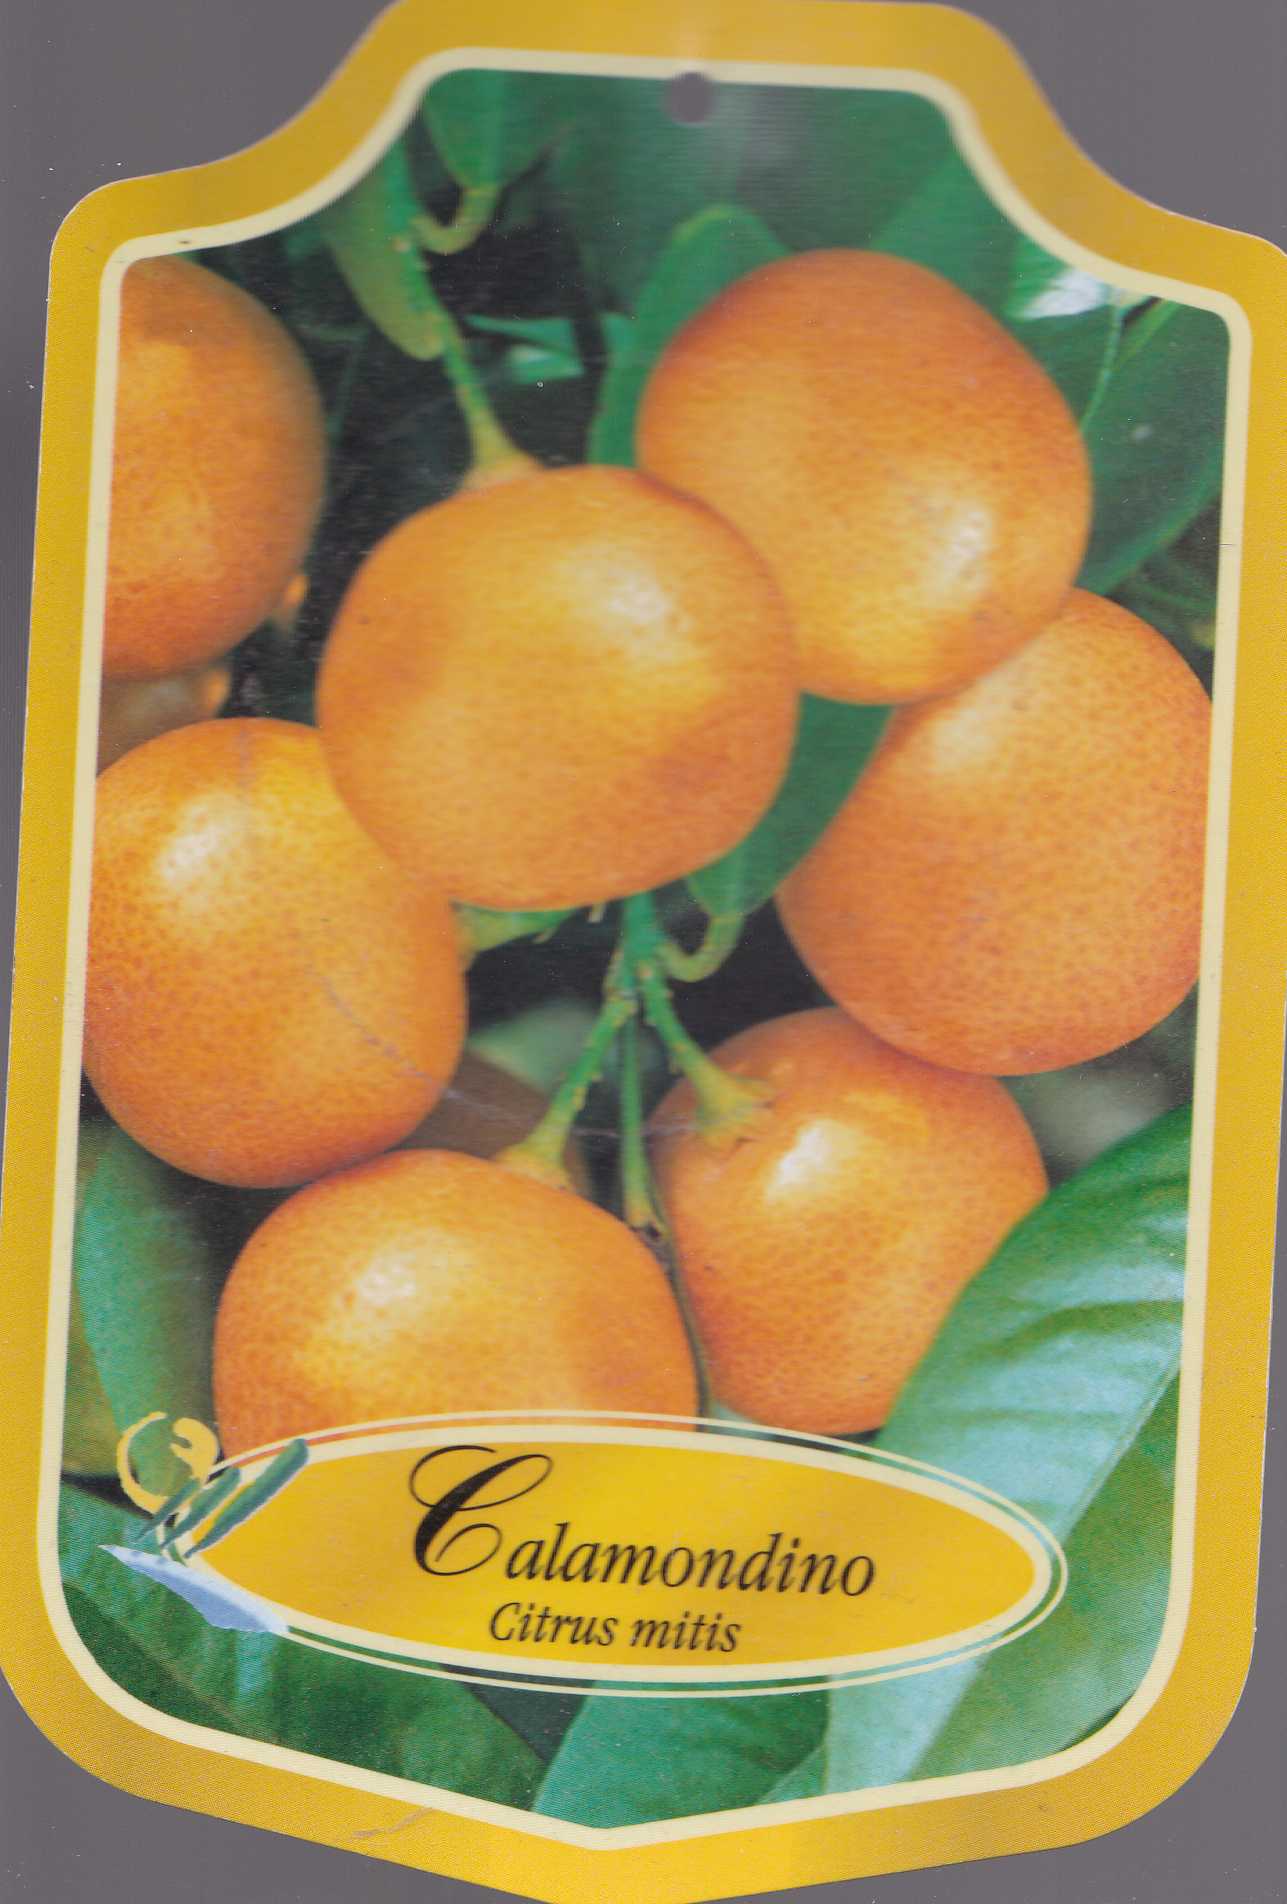 CALAMONDINO905